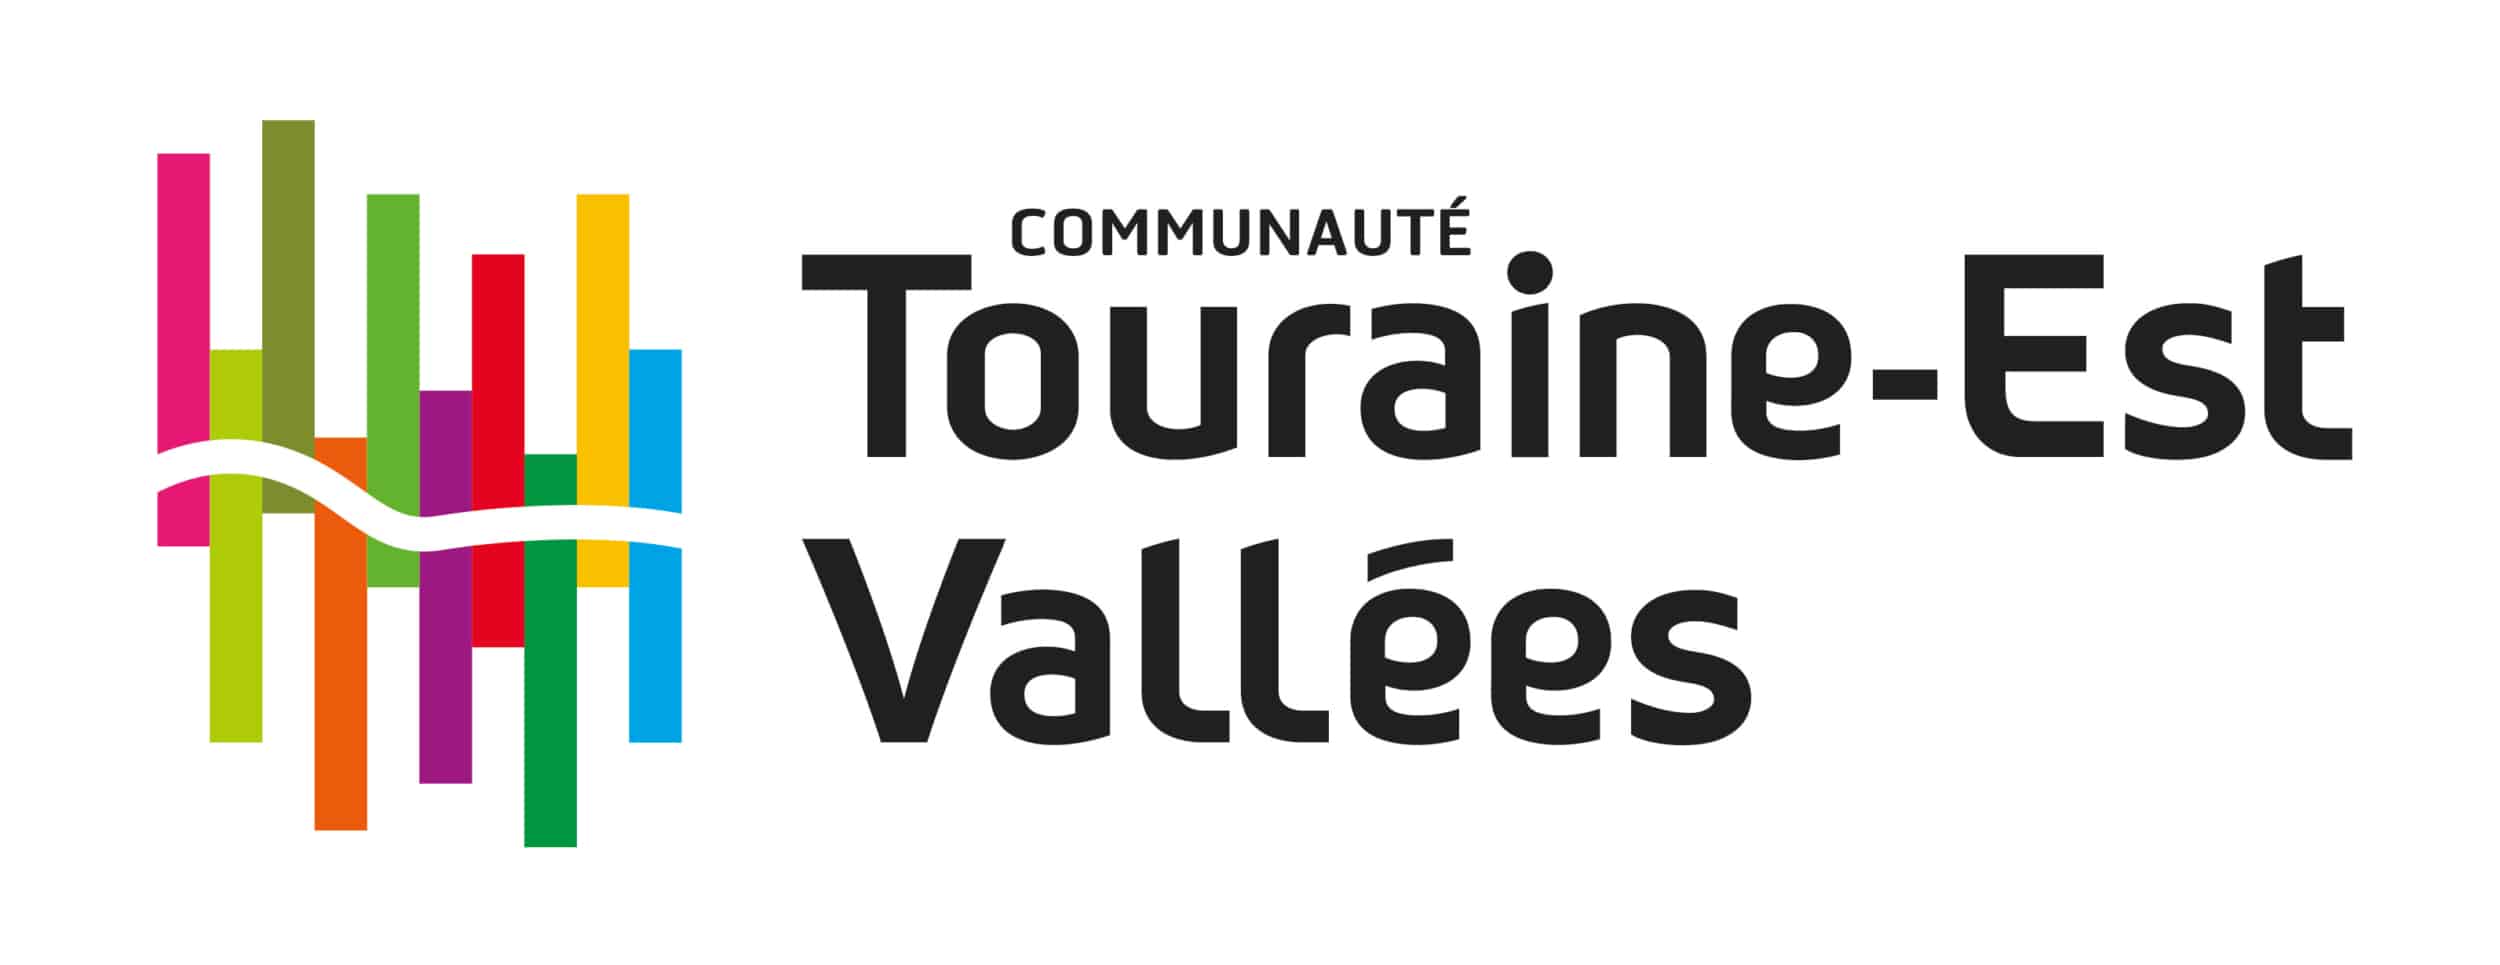 Logo de la communauté de communes Touraine-Est Vallées